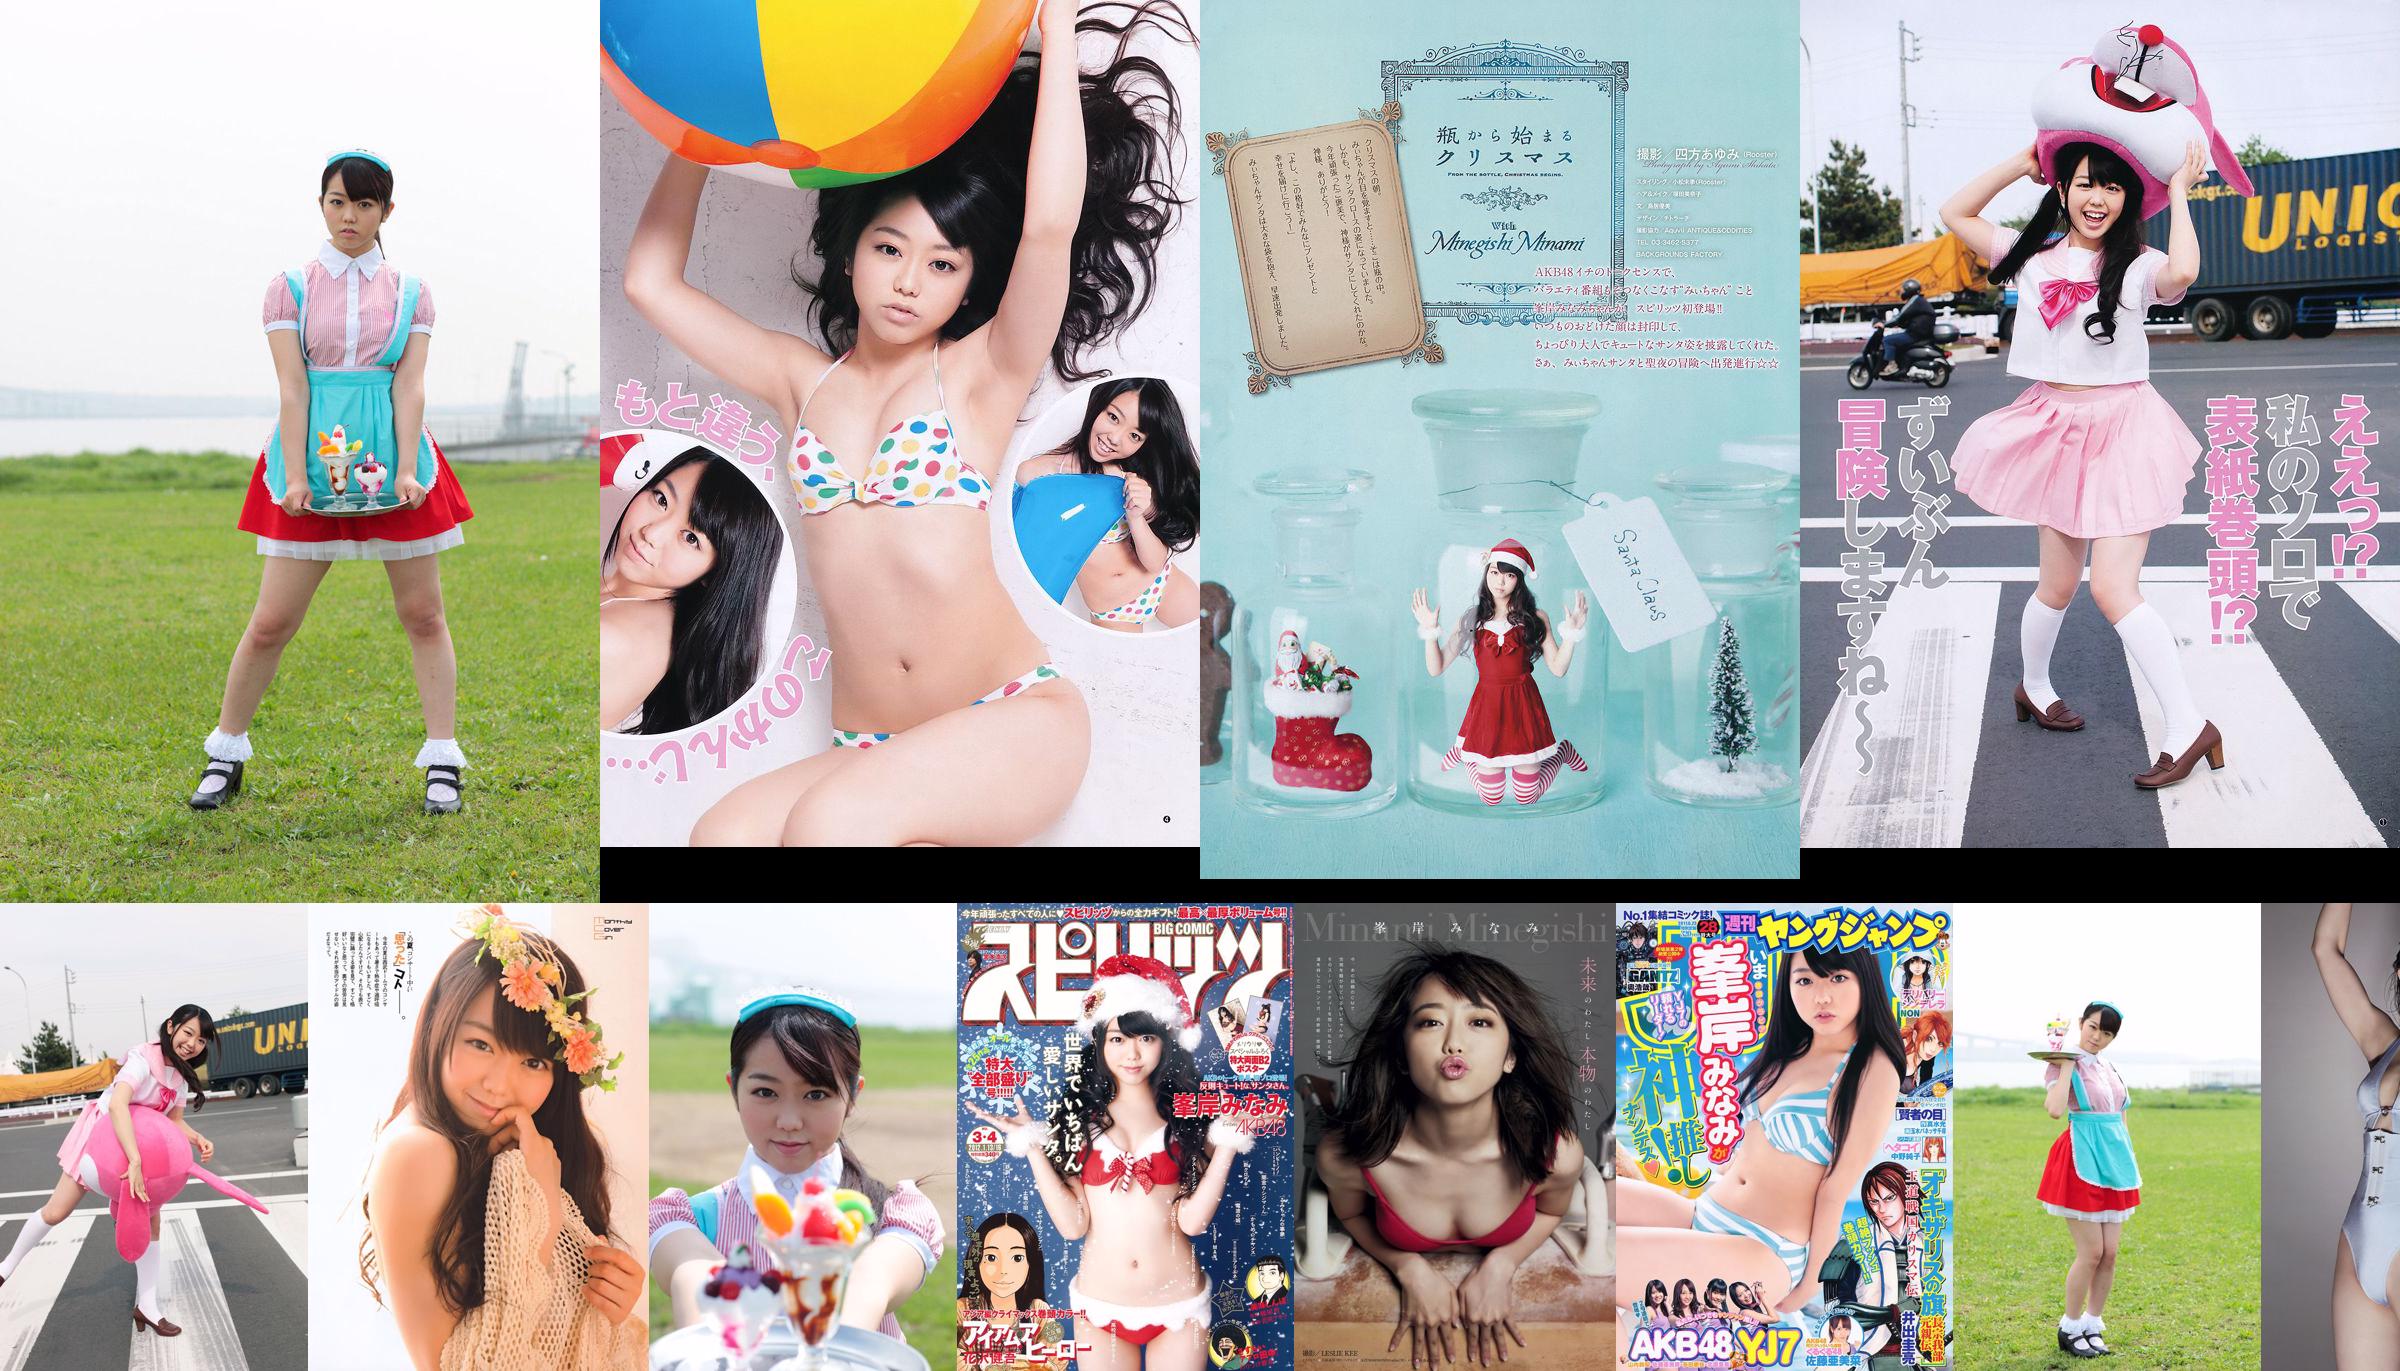 [Weekly Big Comic Spirits] Tạp chí ảnh Minaki Minegishi 2012 số 03-04 No.10dff1 Trang 1